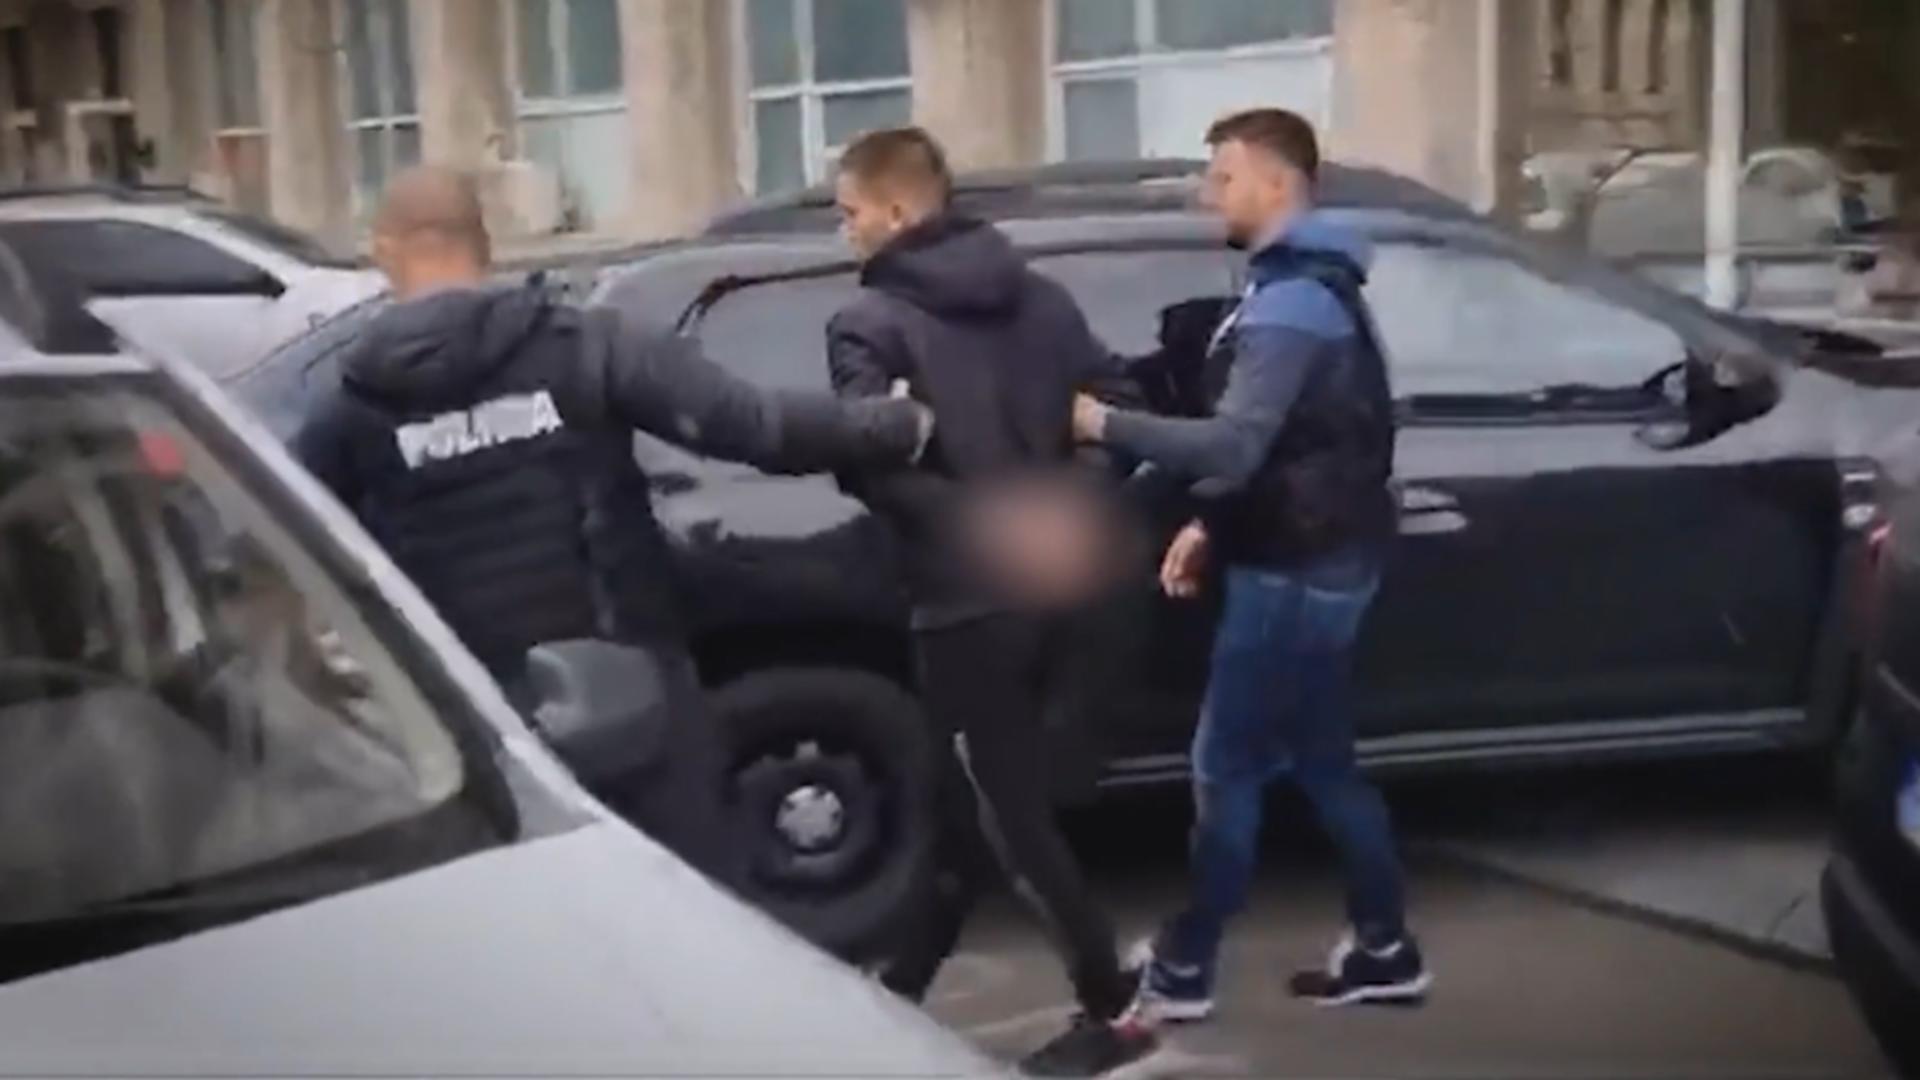 Date noi despre adolescentul criminal din Crângași: Spaima cartierului, se afla în vizorul poliției pentru că umbla cu interlopii 